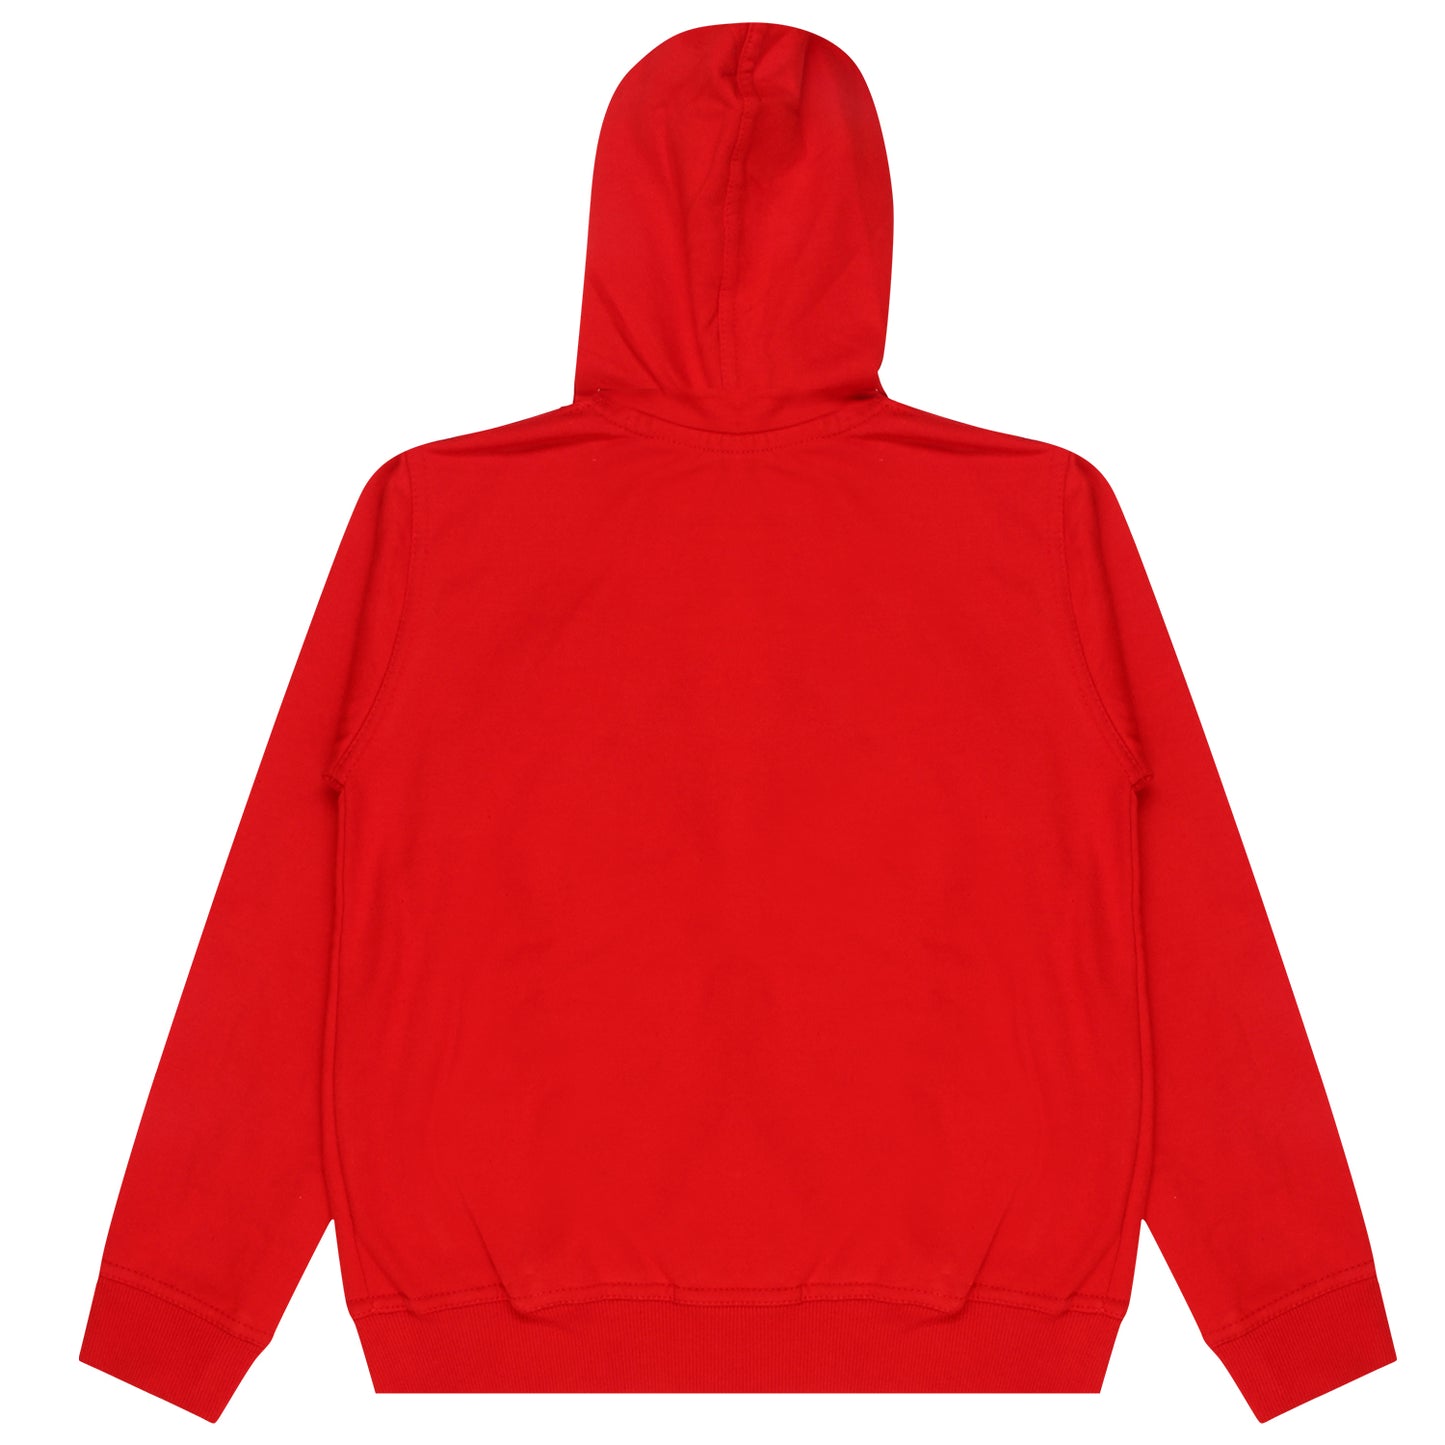 Boys and Girls Printed Red Color Sweatshirt Hoodies